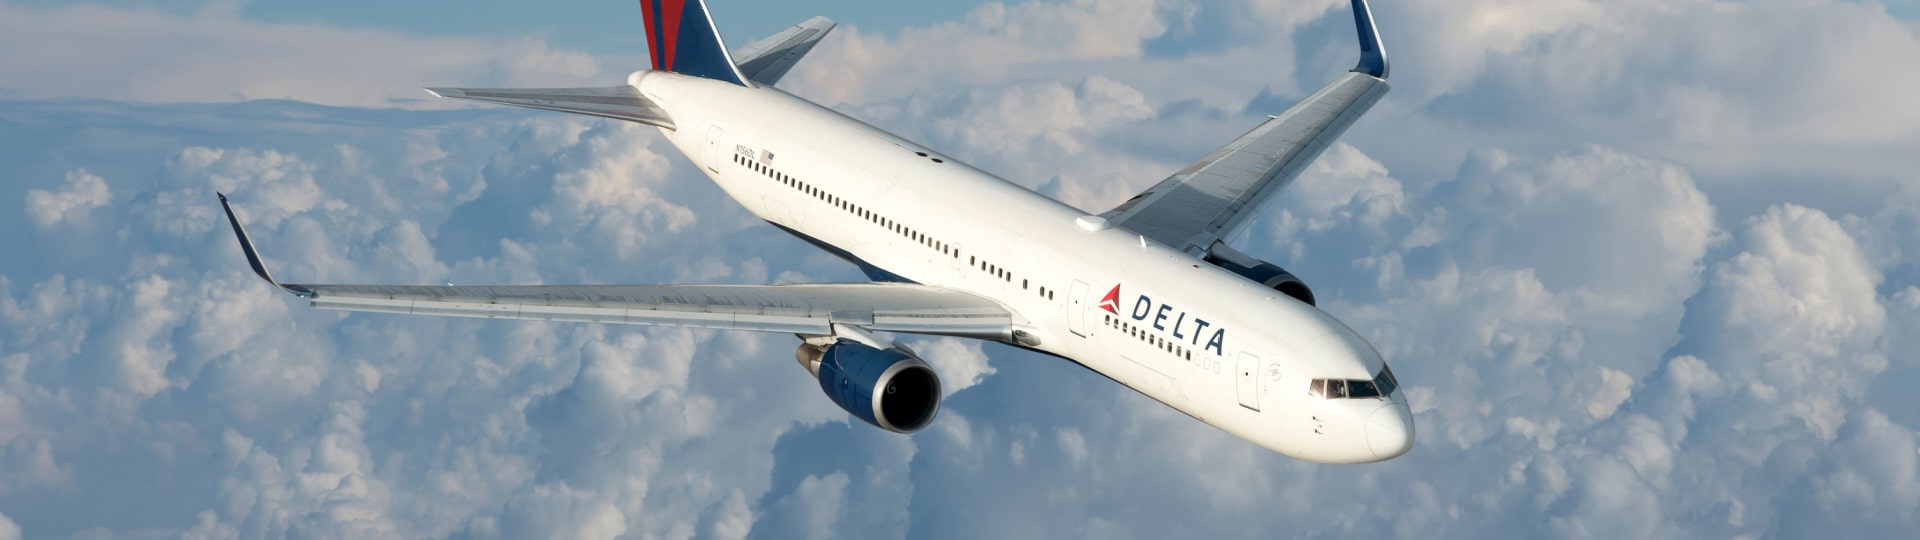 Americké aerolinky Delta snížily čtvrtletní ztrátu